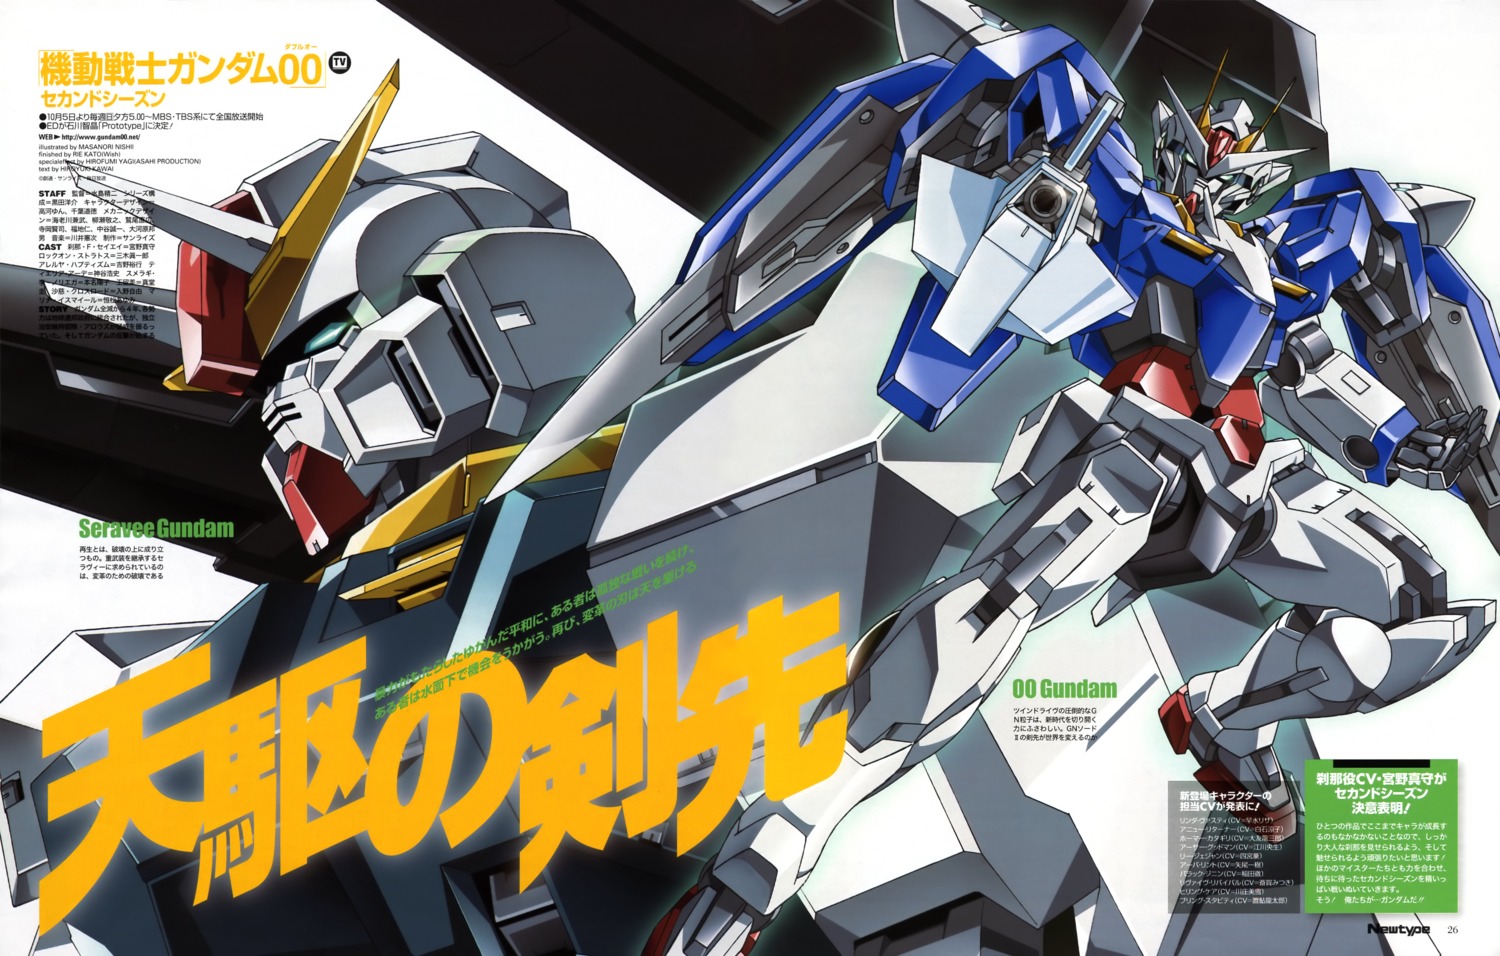 Nishii Masanori Gundam Gundam 00 00 Gundam Seravee Gundam Mecha Yande Re